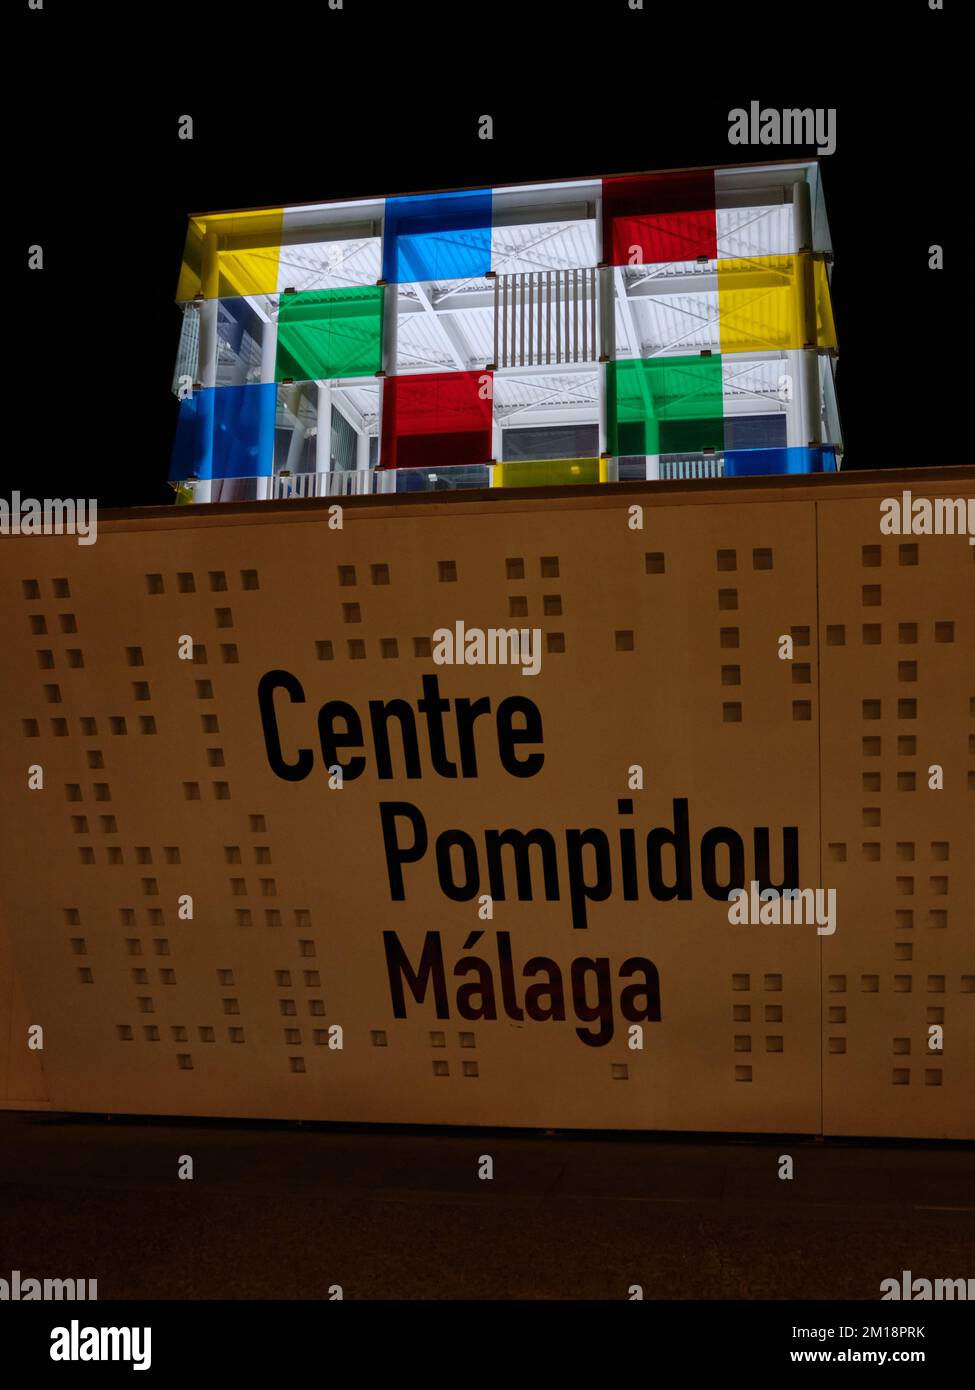 Centre Pompidou, Malaga, Espagne. Banque D'Images